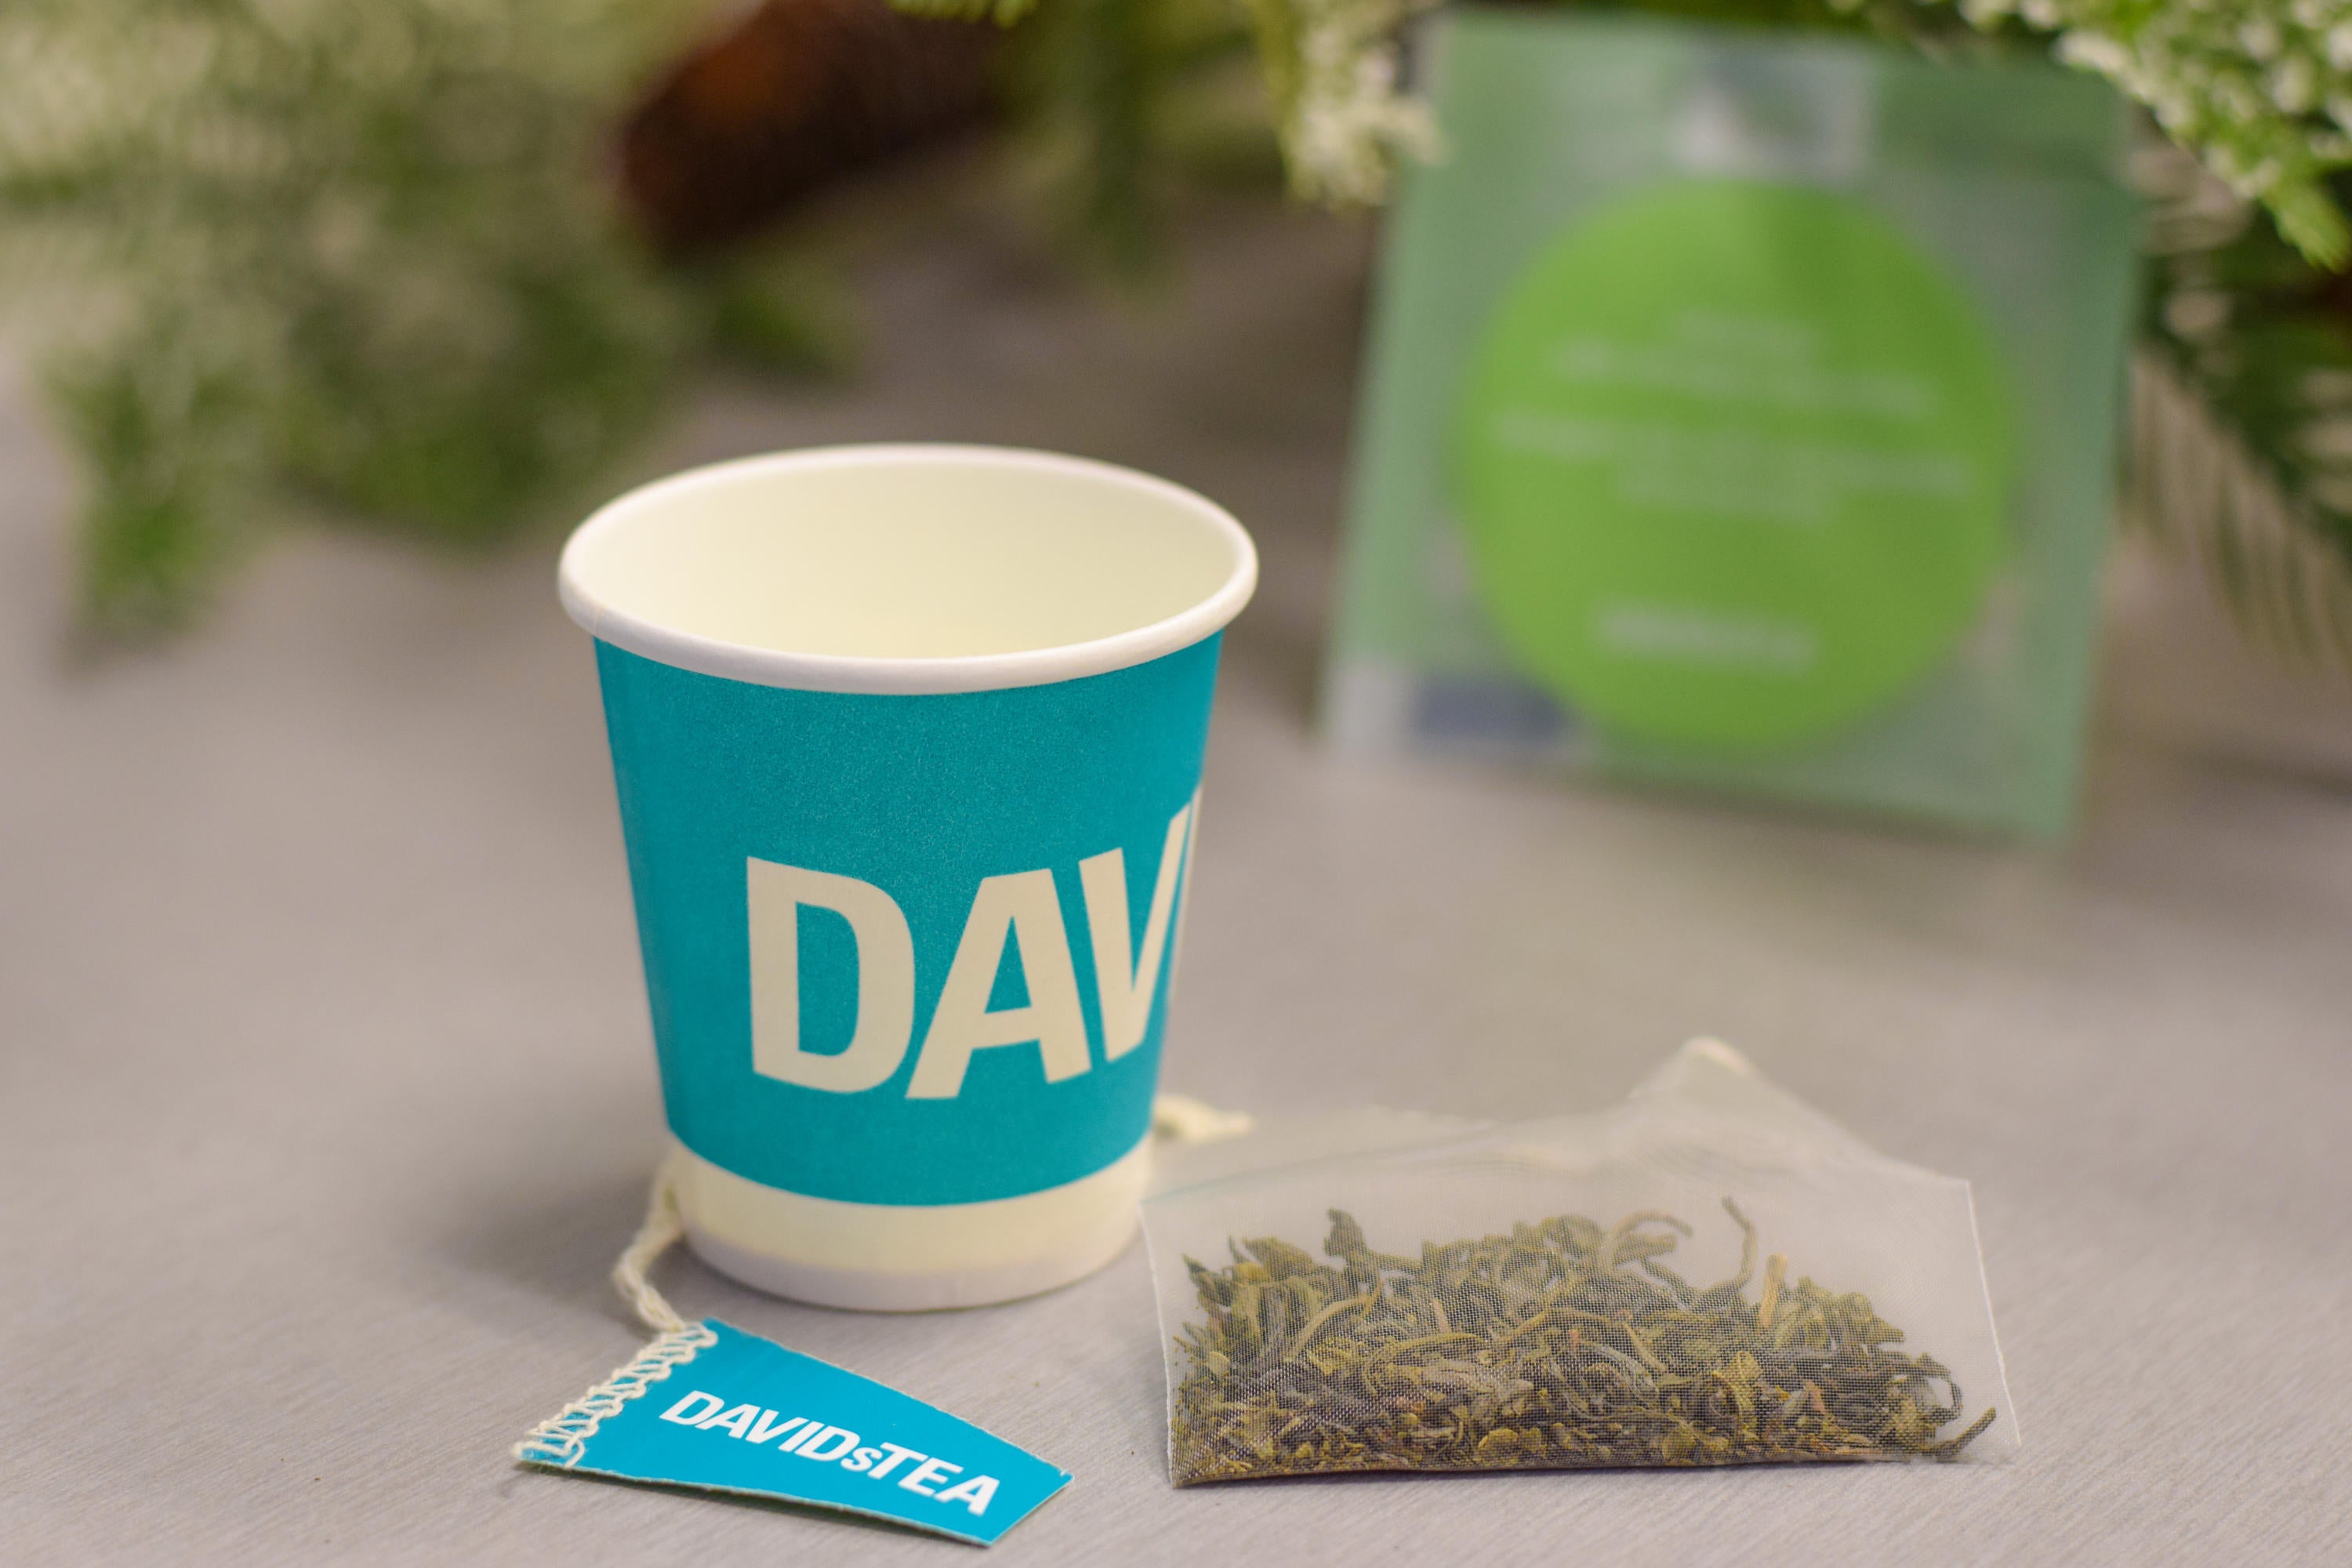 Photo of Davids Tea cup